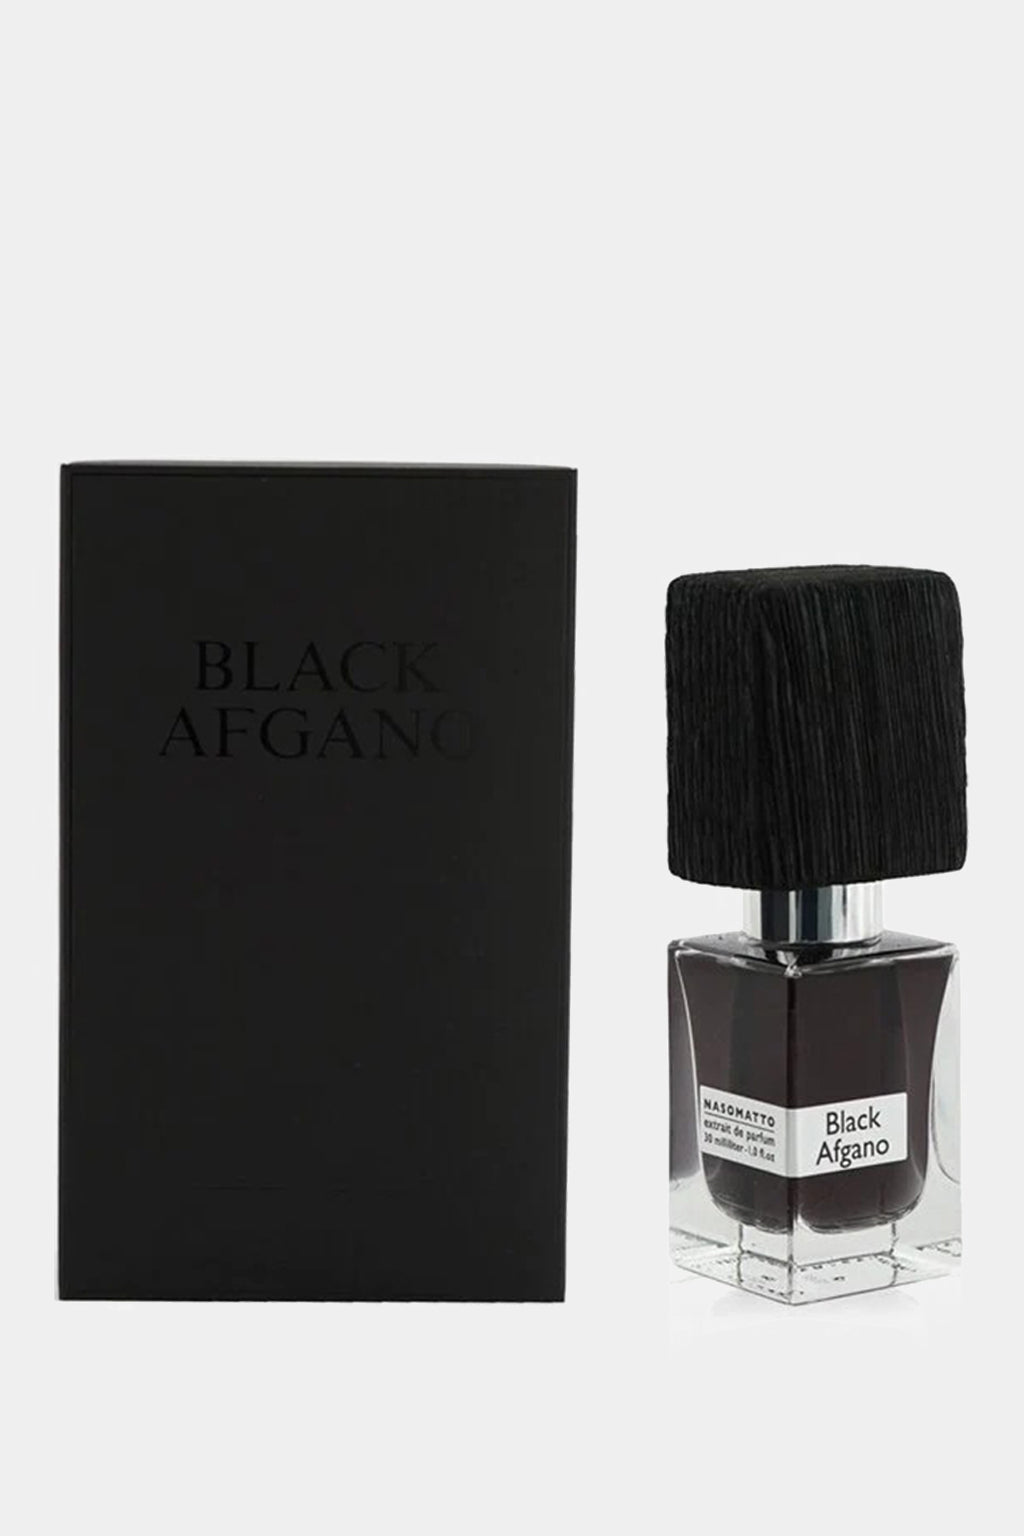 Nasomatto - Black Afgano Extrait de Parfum